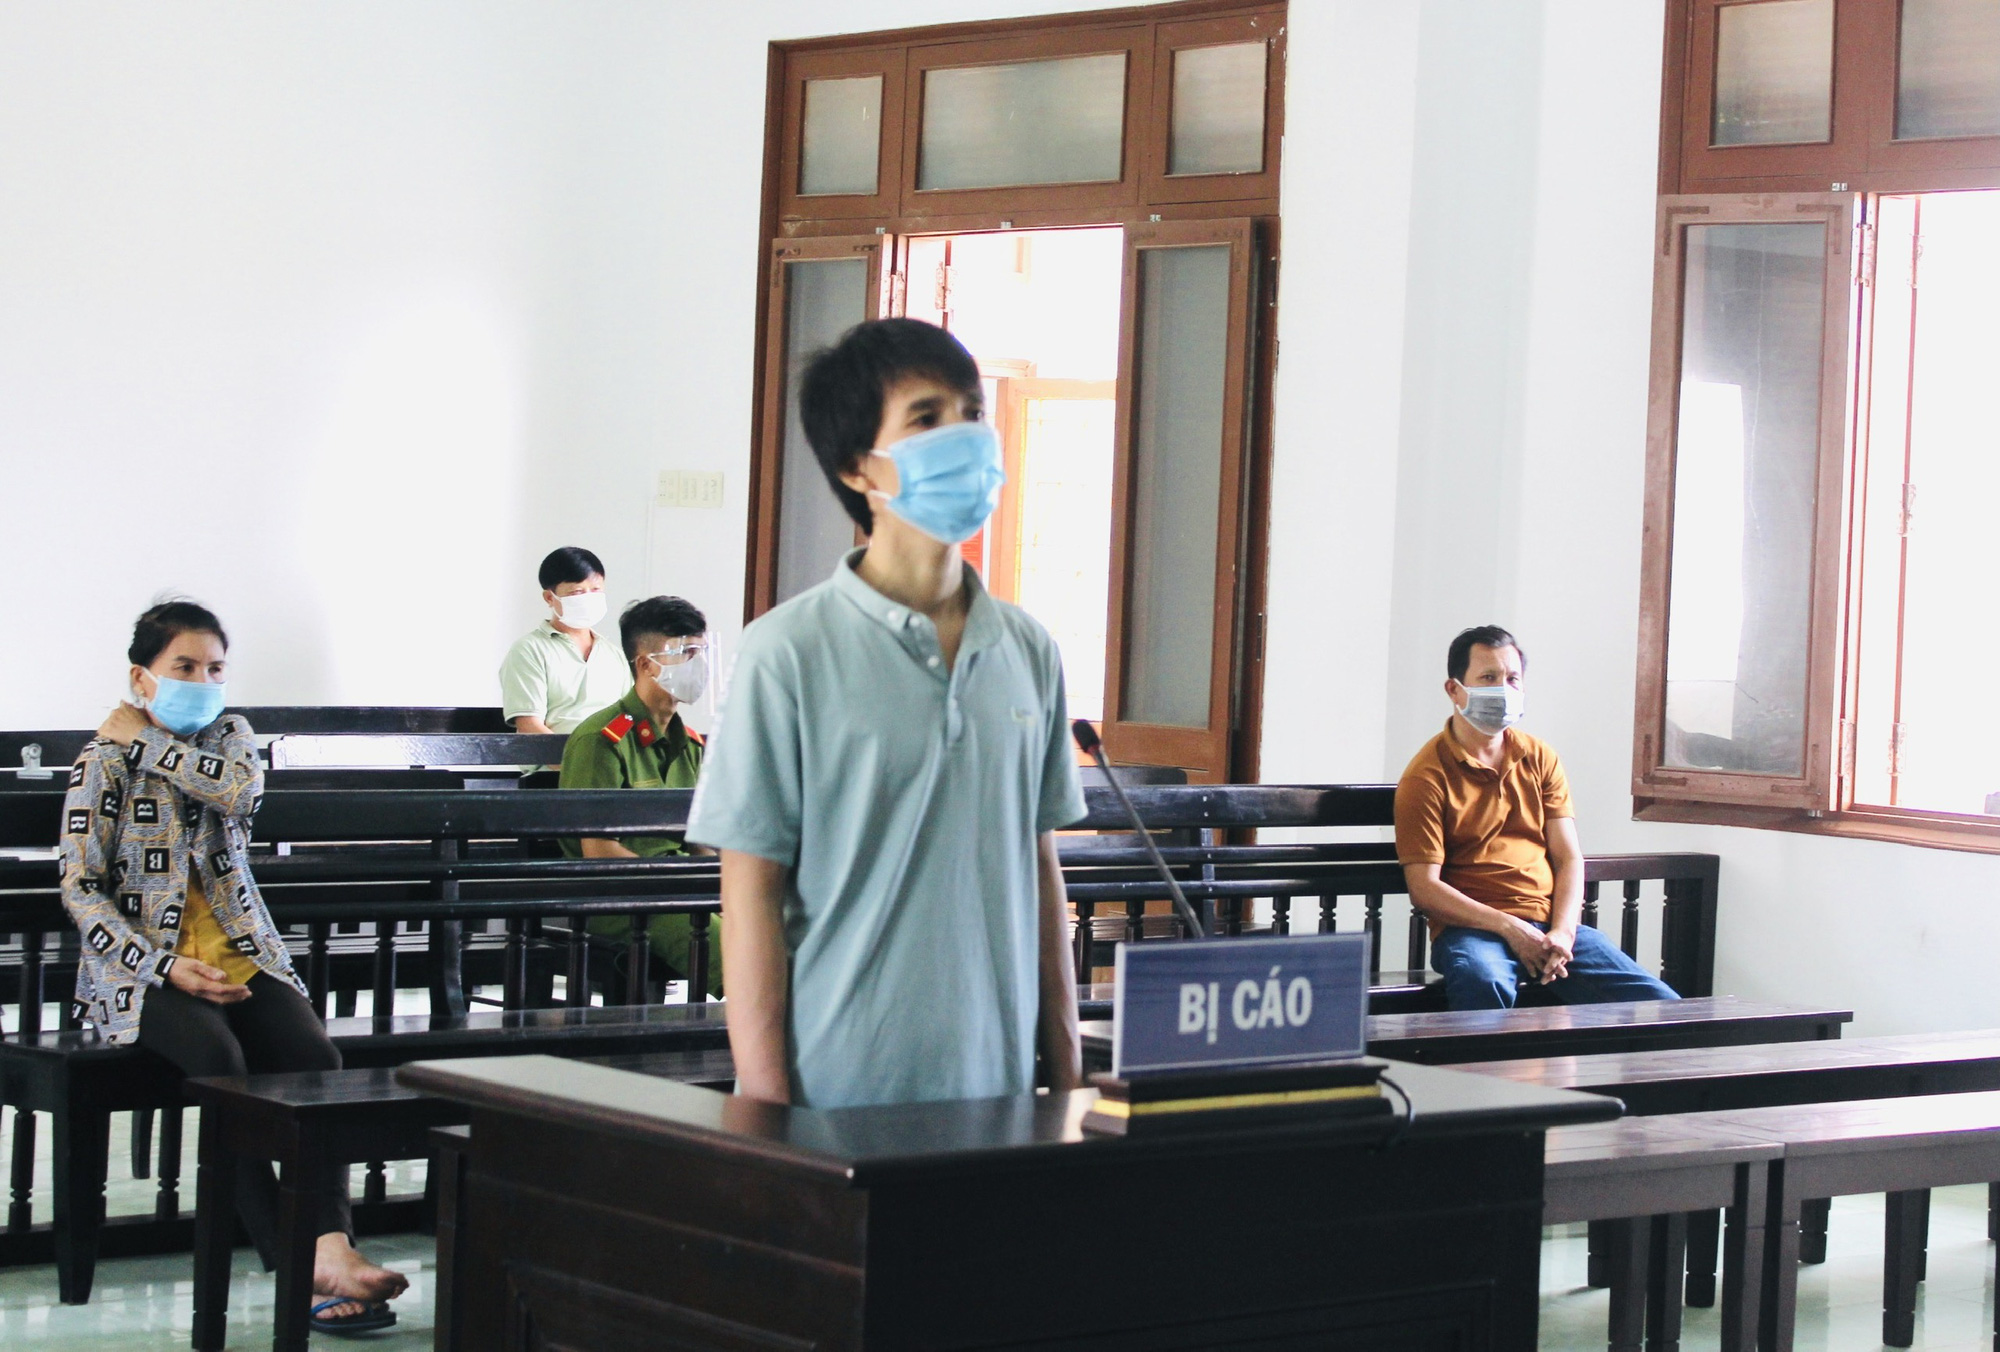 Phú Yên: Xử phạt 10 năm tù kẻ hoạt động nhằm lật đổ chính quyền nhân dân - Ảnh 1.